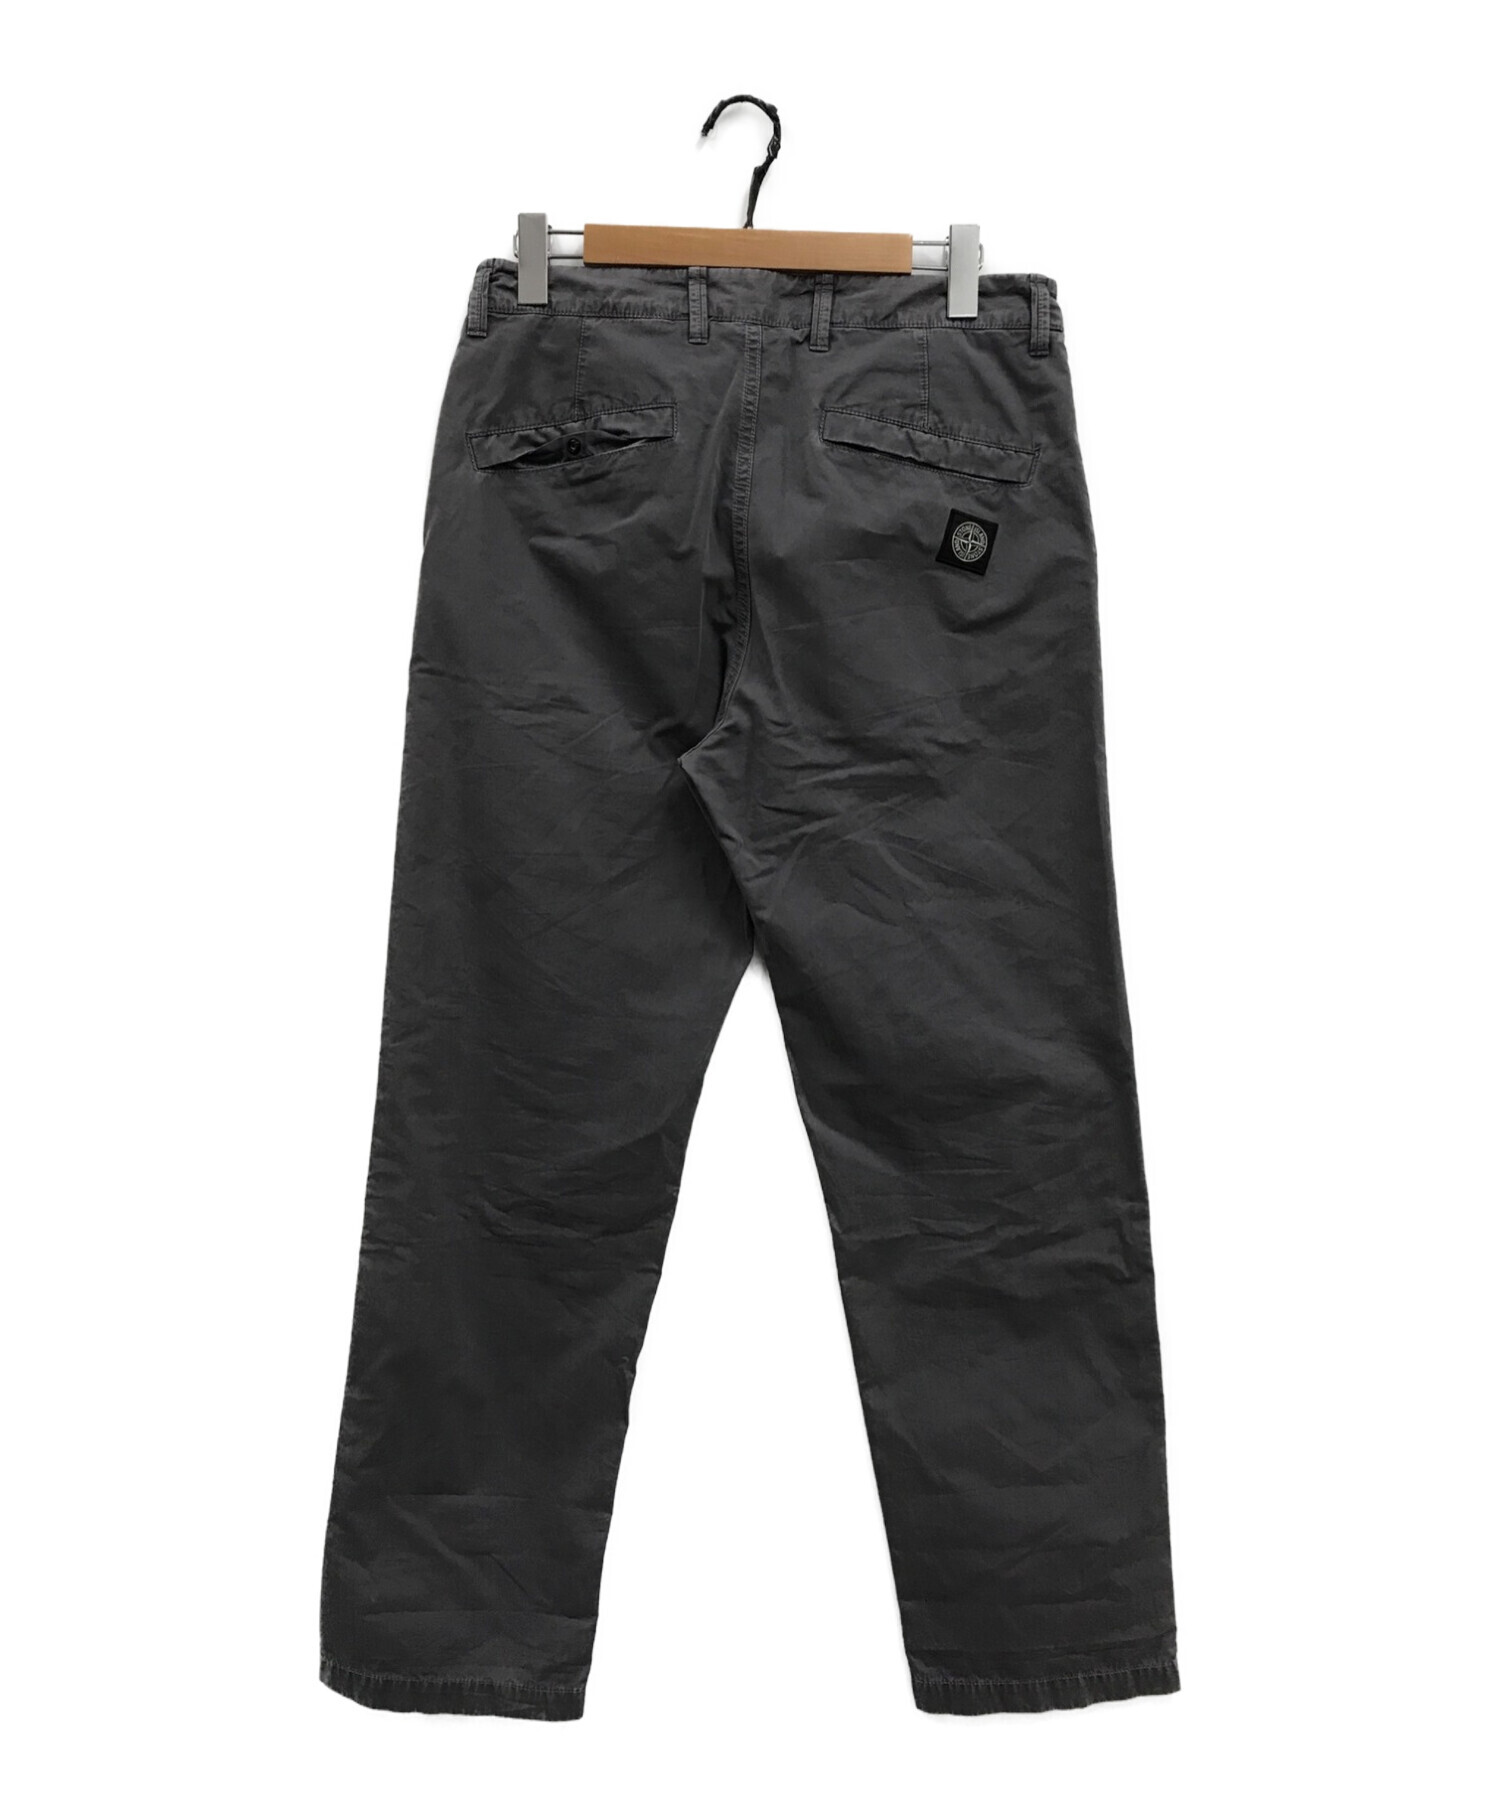 STONE ISLAND (ストーンアイランド) ウォッシュドストレートパンツ / logo-patch washed trousers グレー  サイズ:76cm (W30)